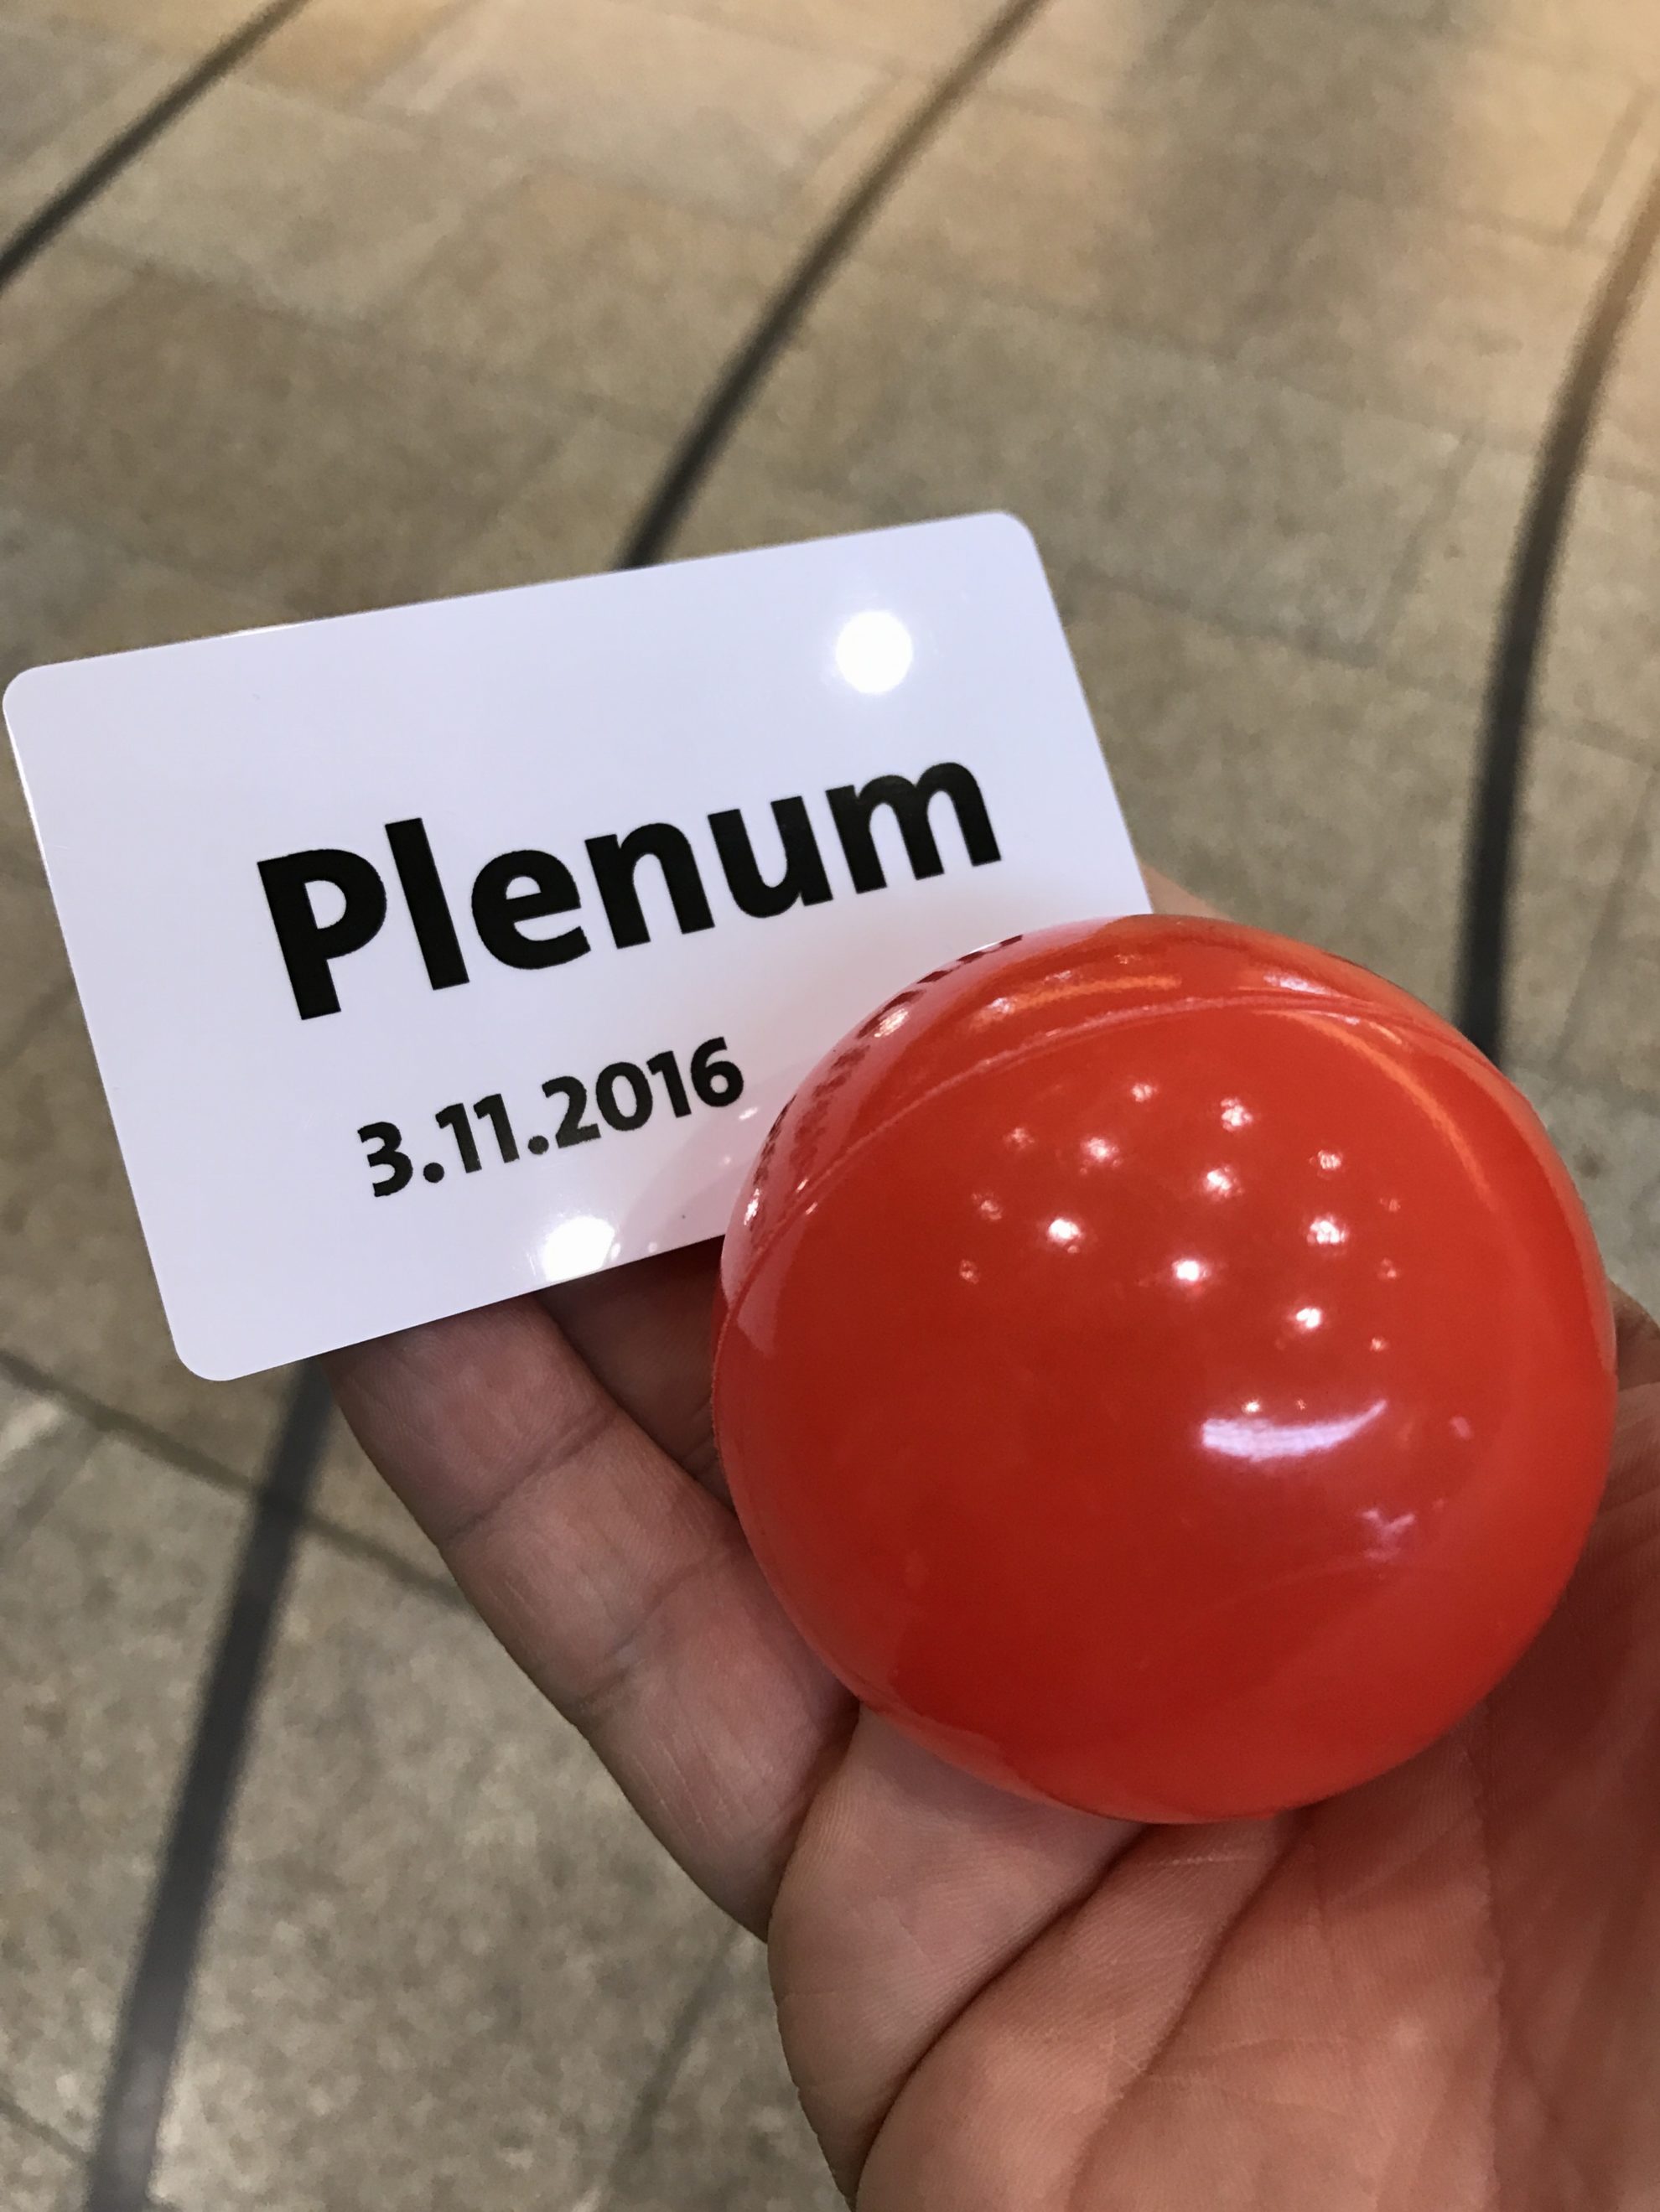 Arbeitnehmerempfang der SPD-Fraktion NRW: Abstimmungsball und Plenumskarte